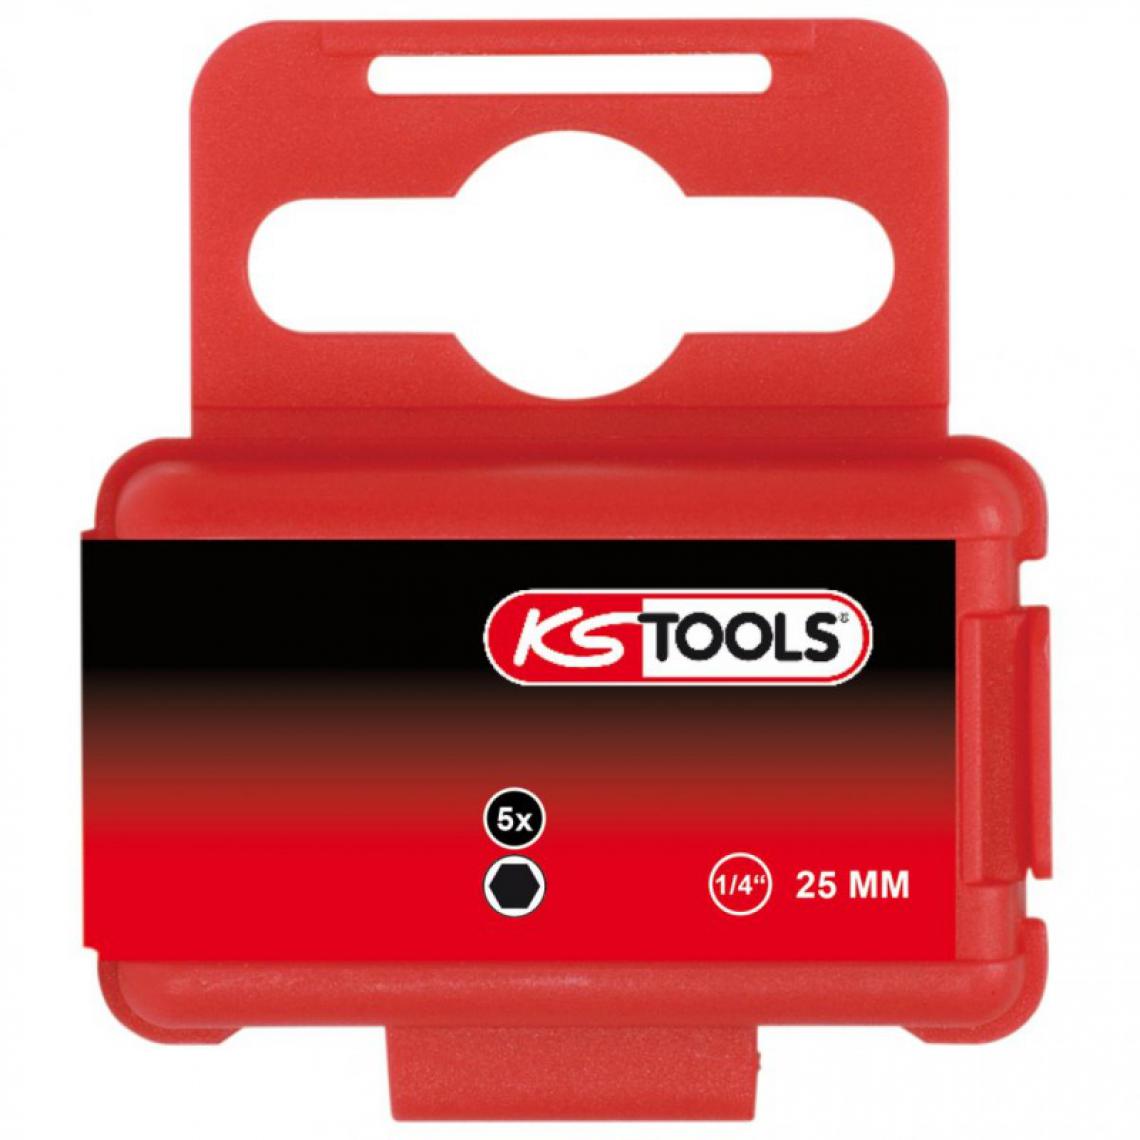 Ks Tools - Boite de 5 embouts de vissage 6 pans L.25mm 1/4" 7/32" Kstools - Accessoires vissage, perçage